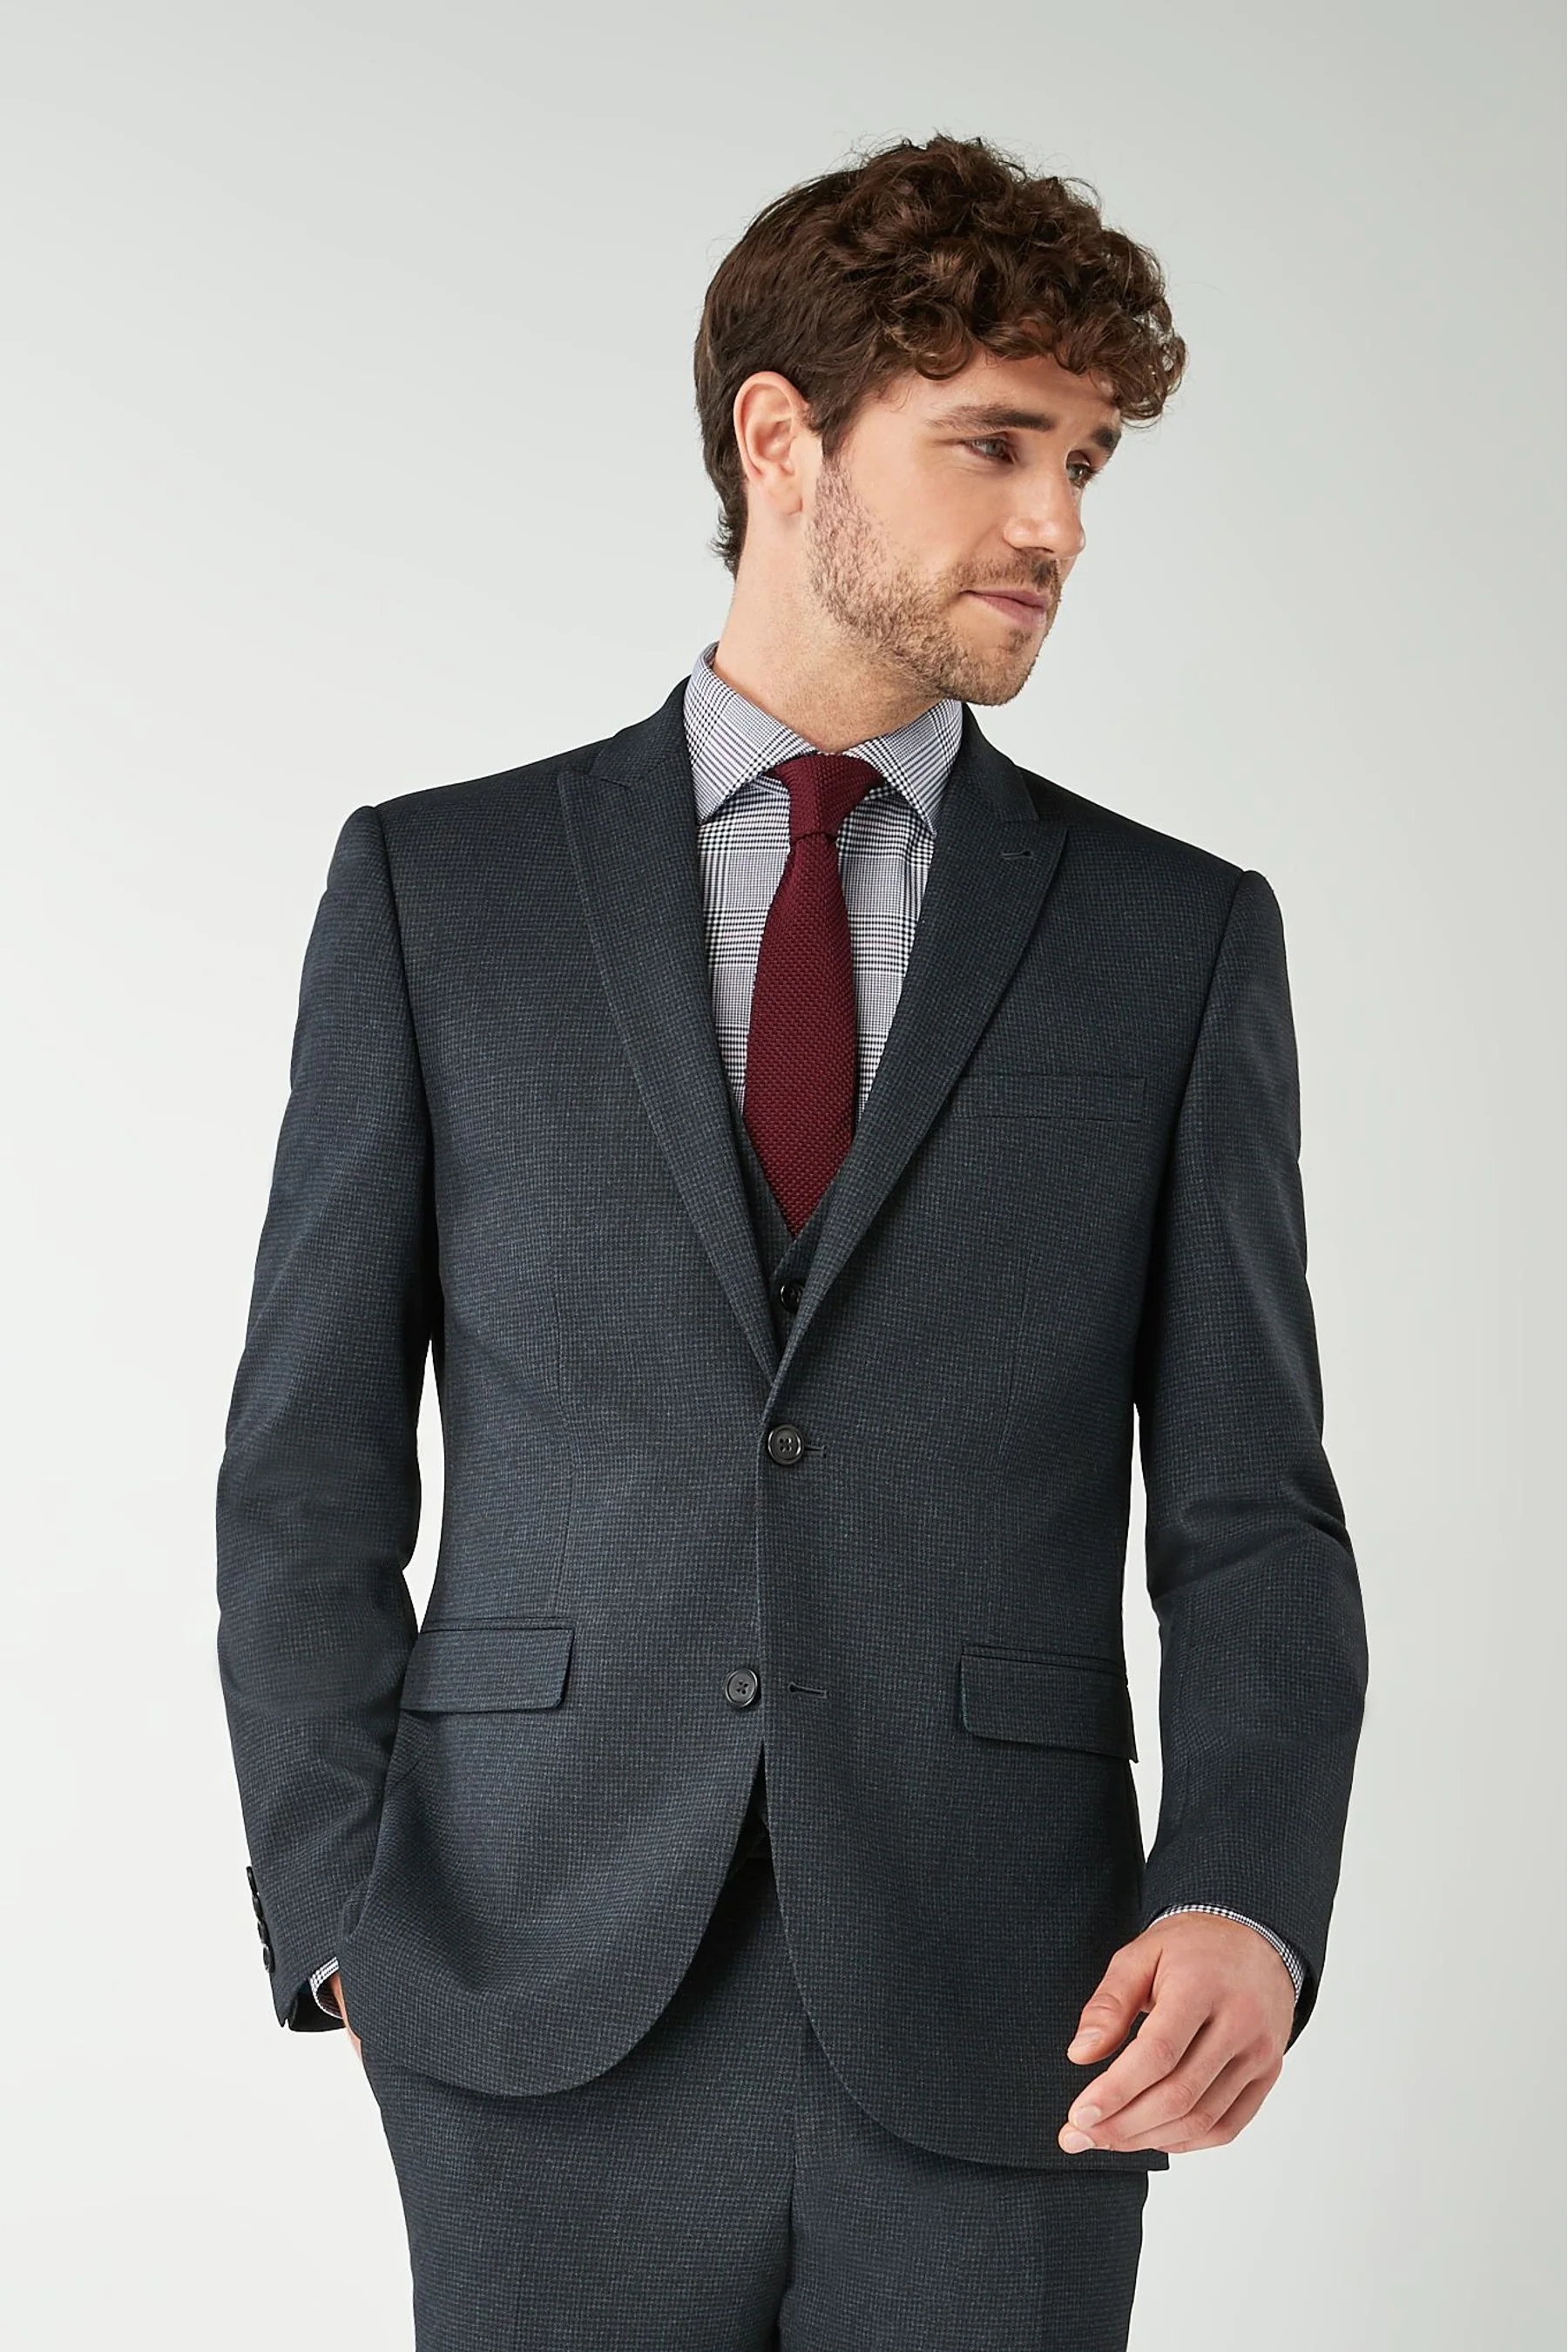 Traje de chaqueta tejido gris oscuro de un solo pecho con cuello en V para hombres de oficina de diseño personalizado